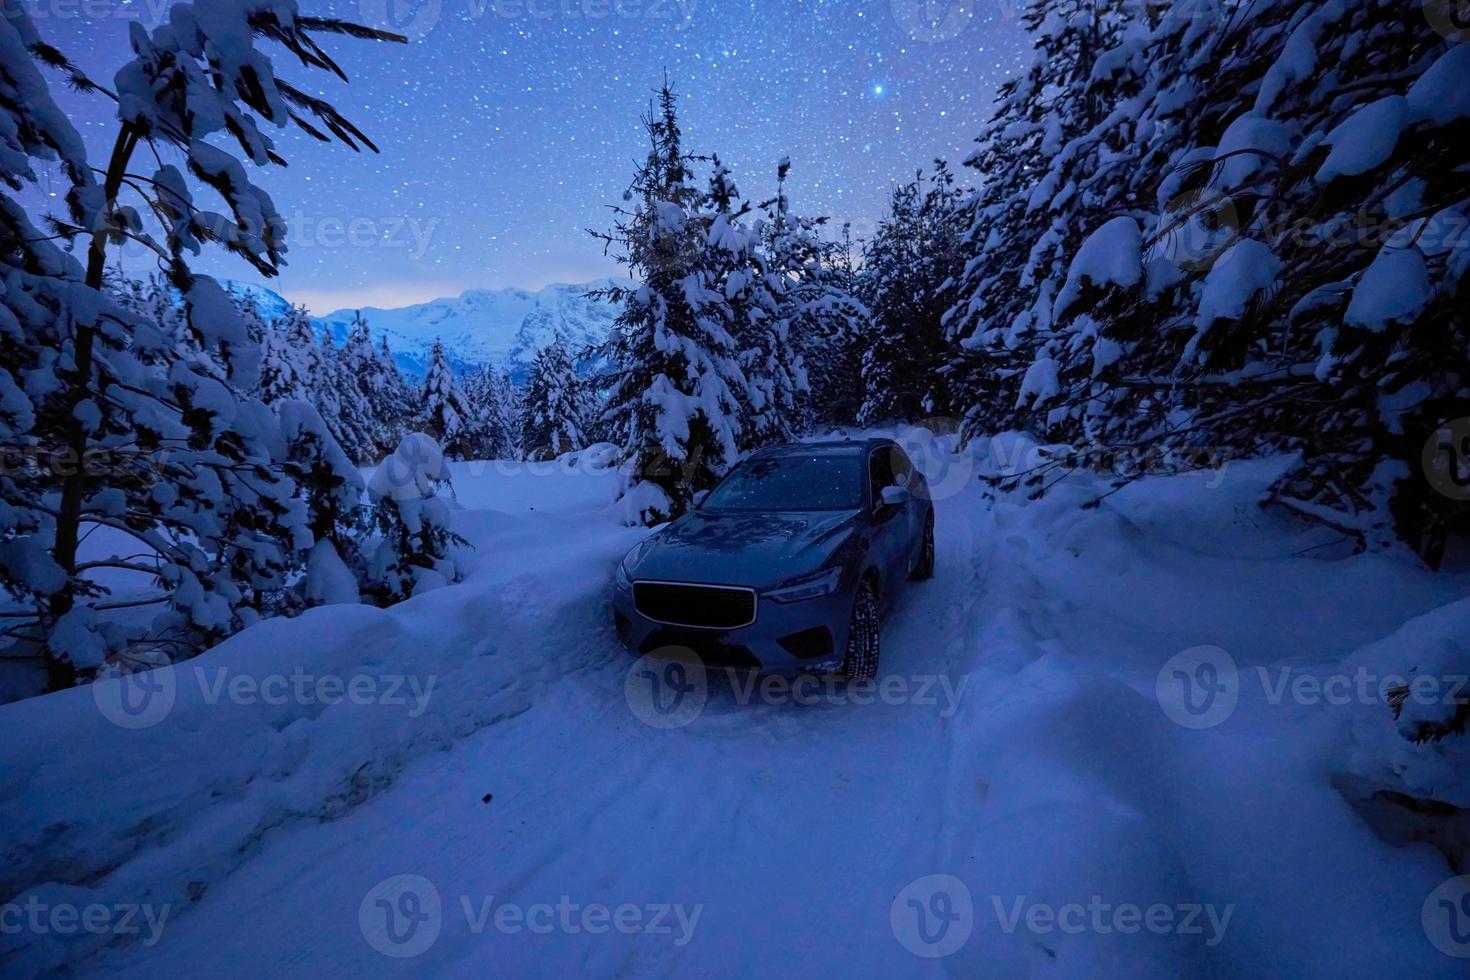 coche suv todoterreno en la helada carretera norte de invierno foto